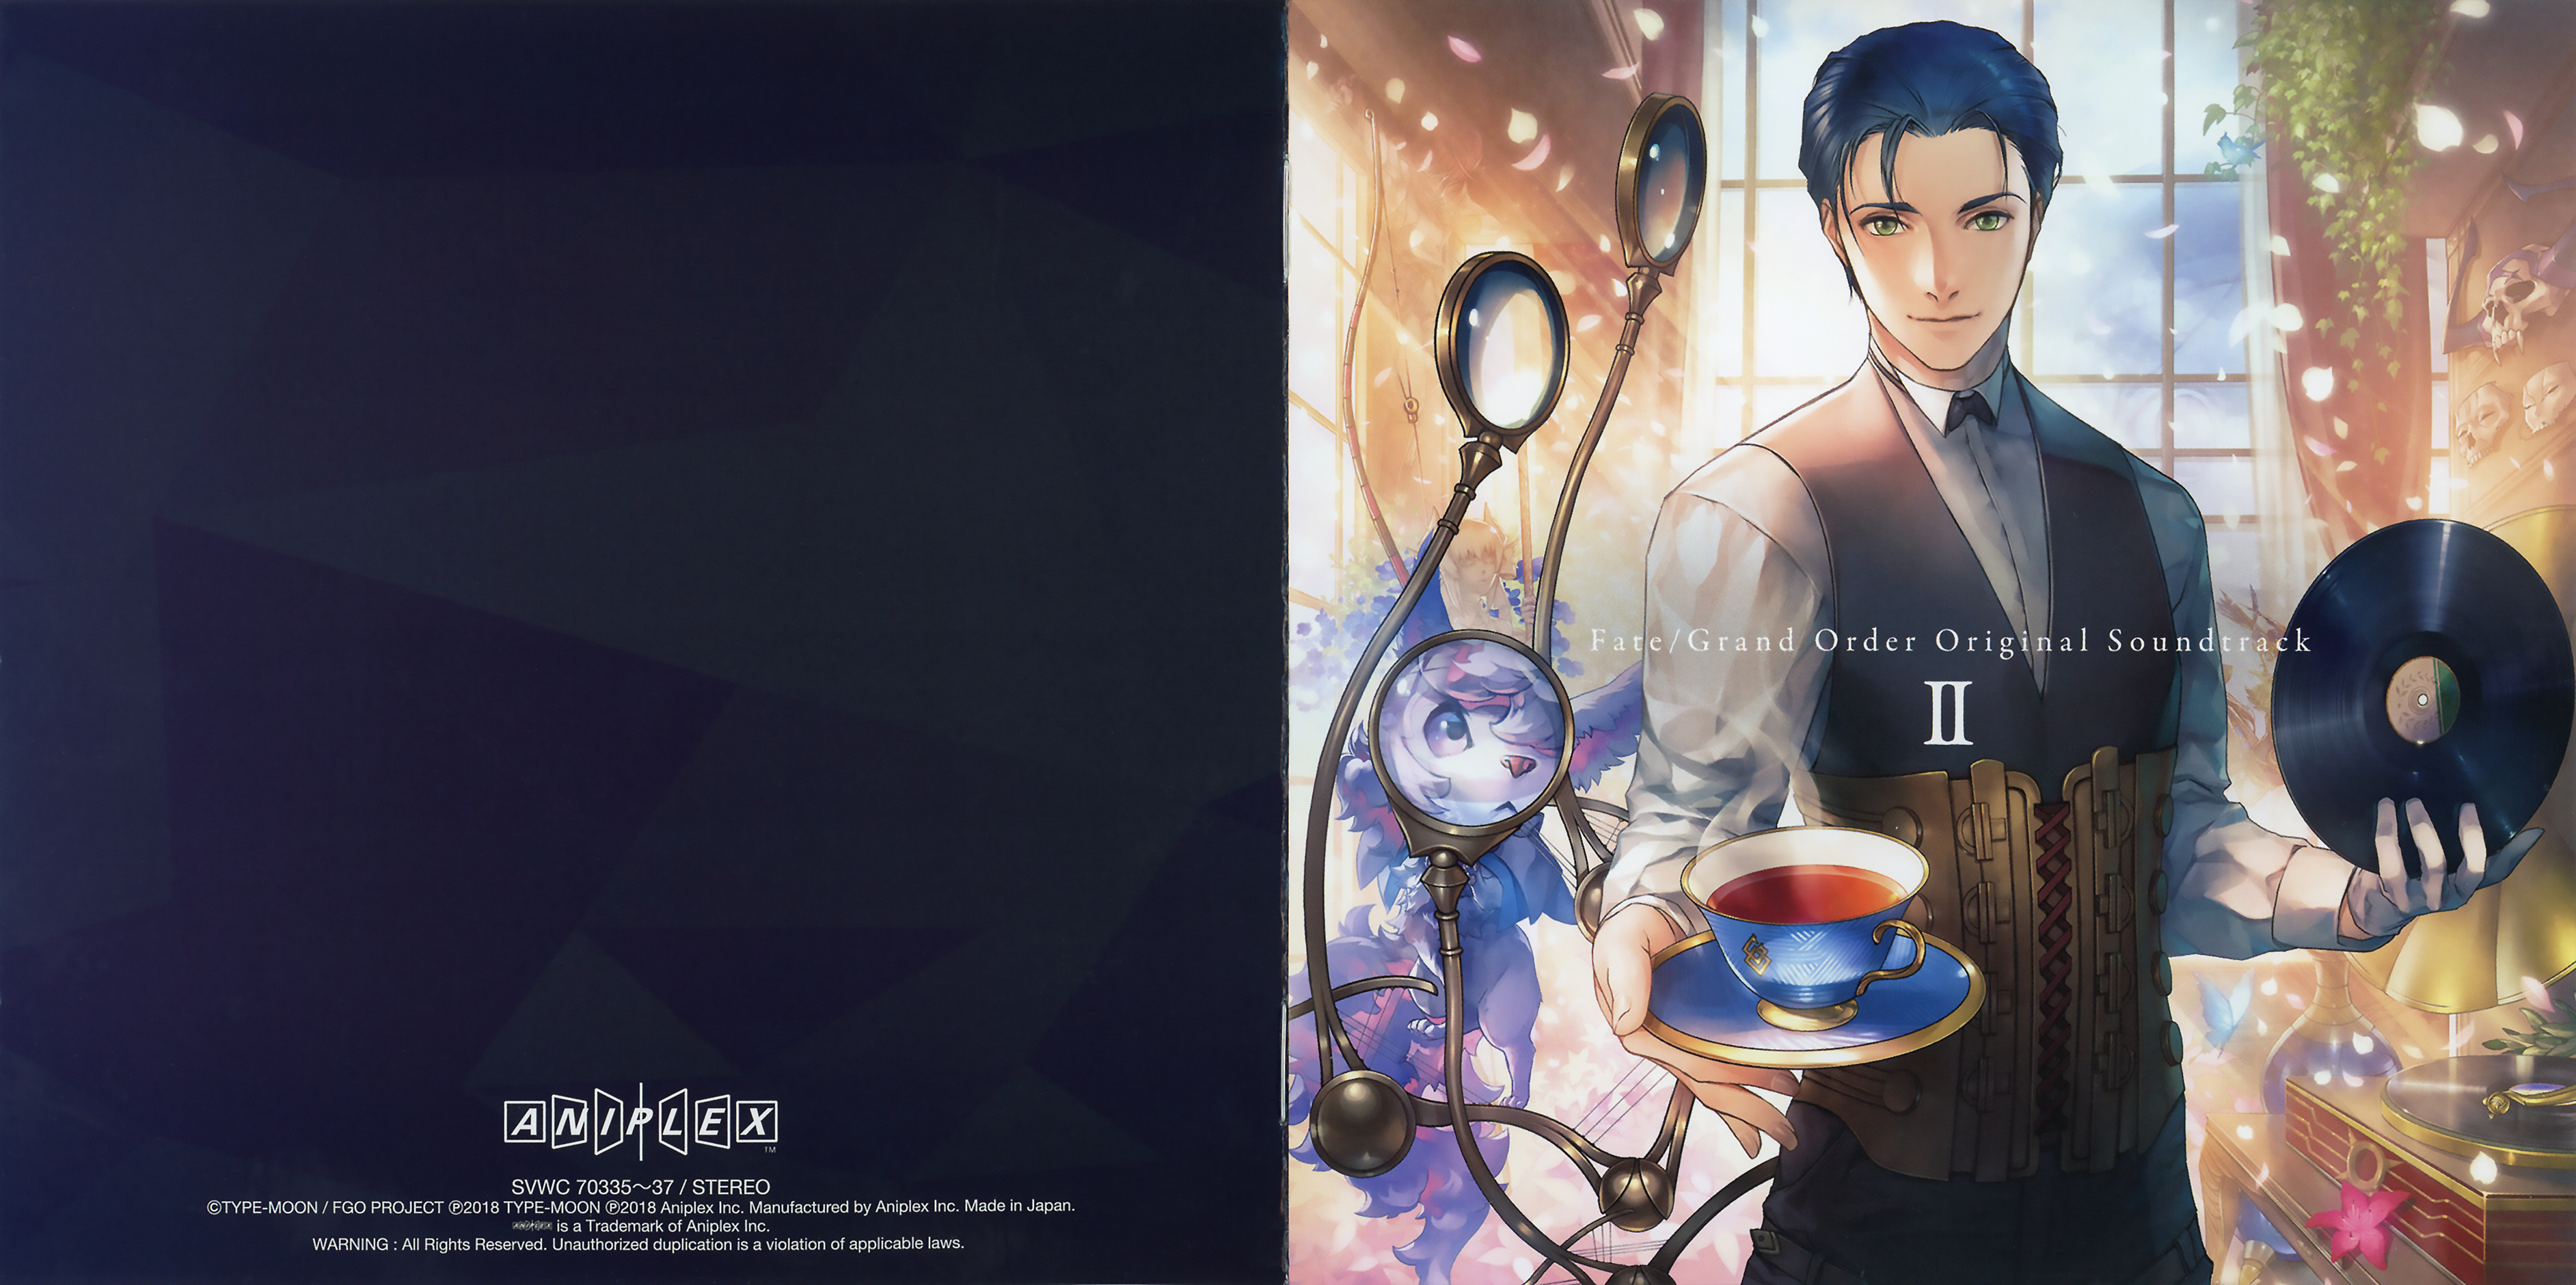 Fate Grand Order Original Soundtrack Ii Mp3 Download Fate Grand